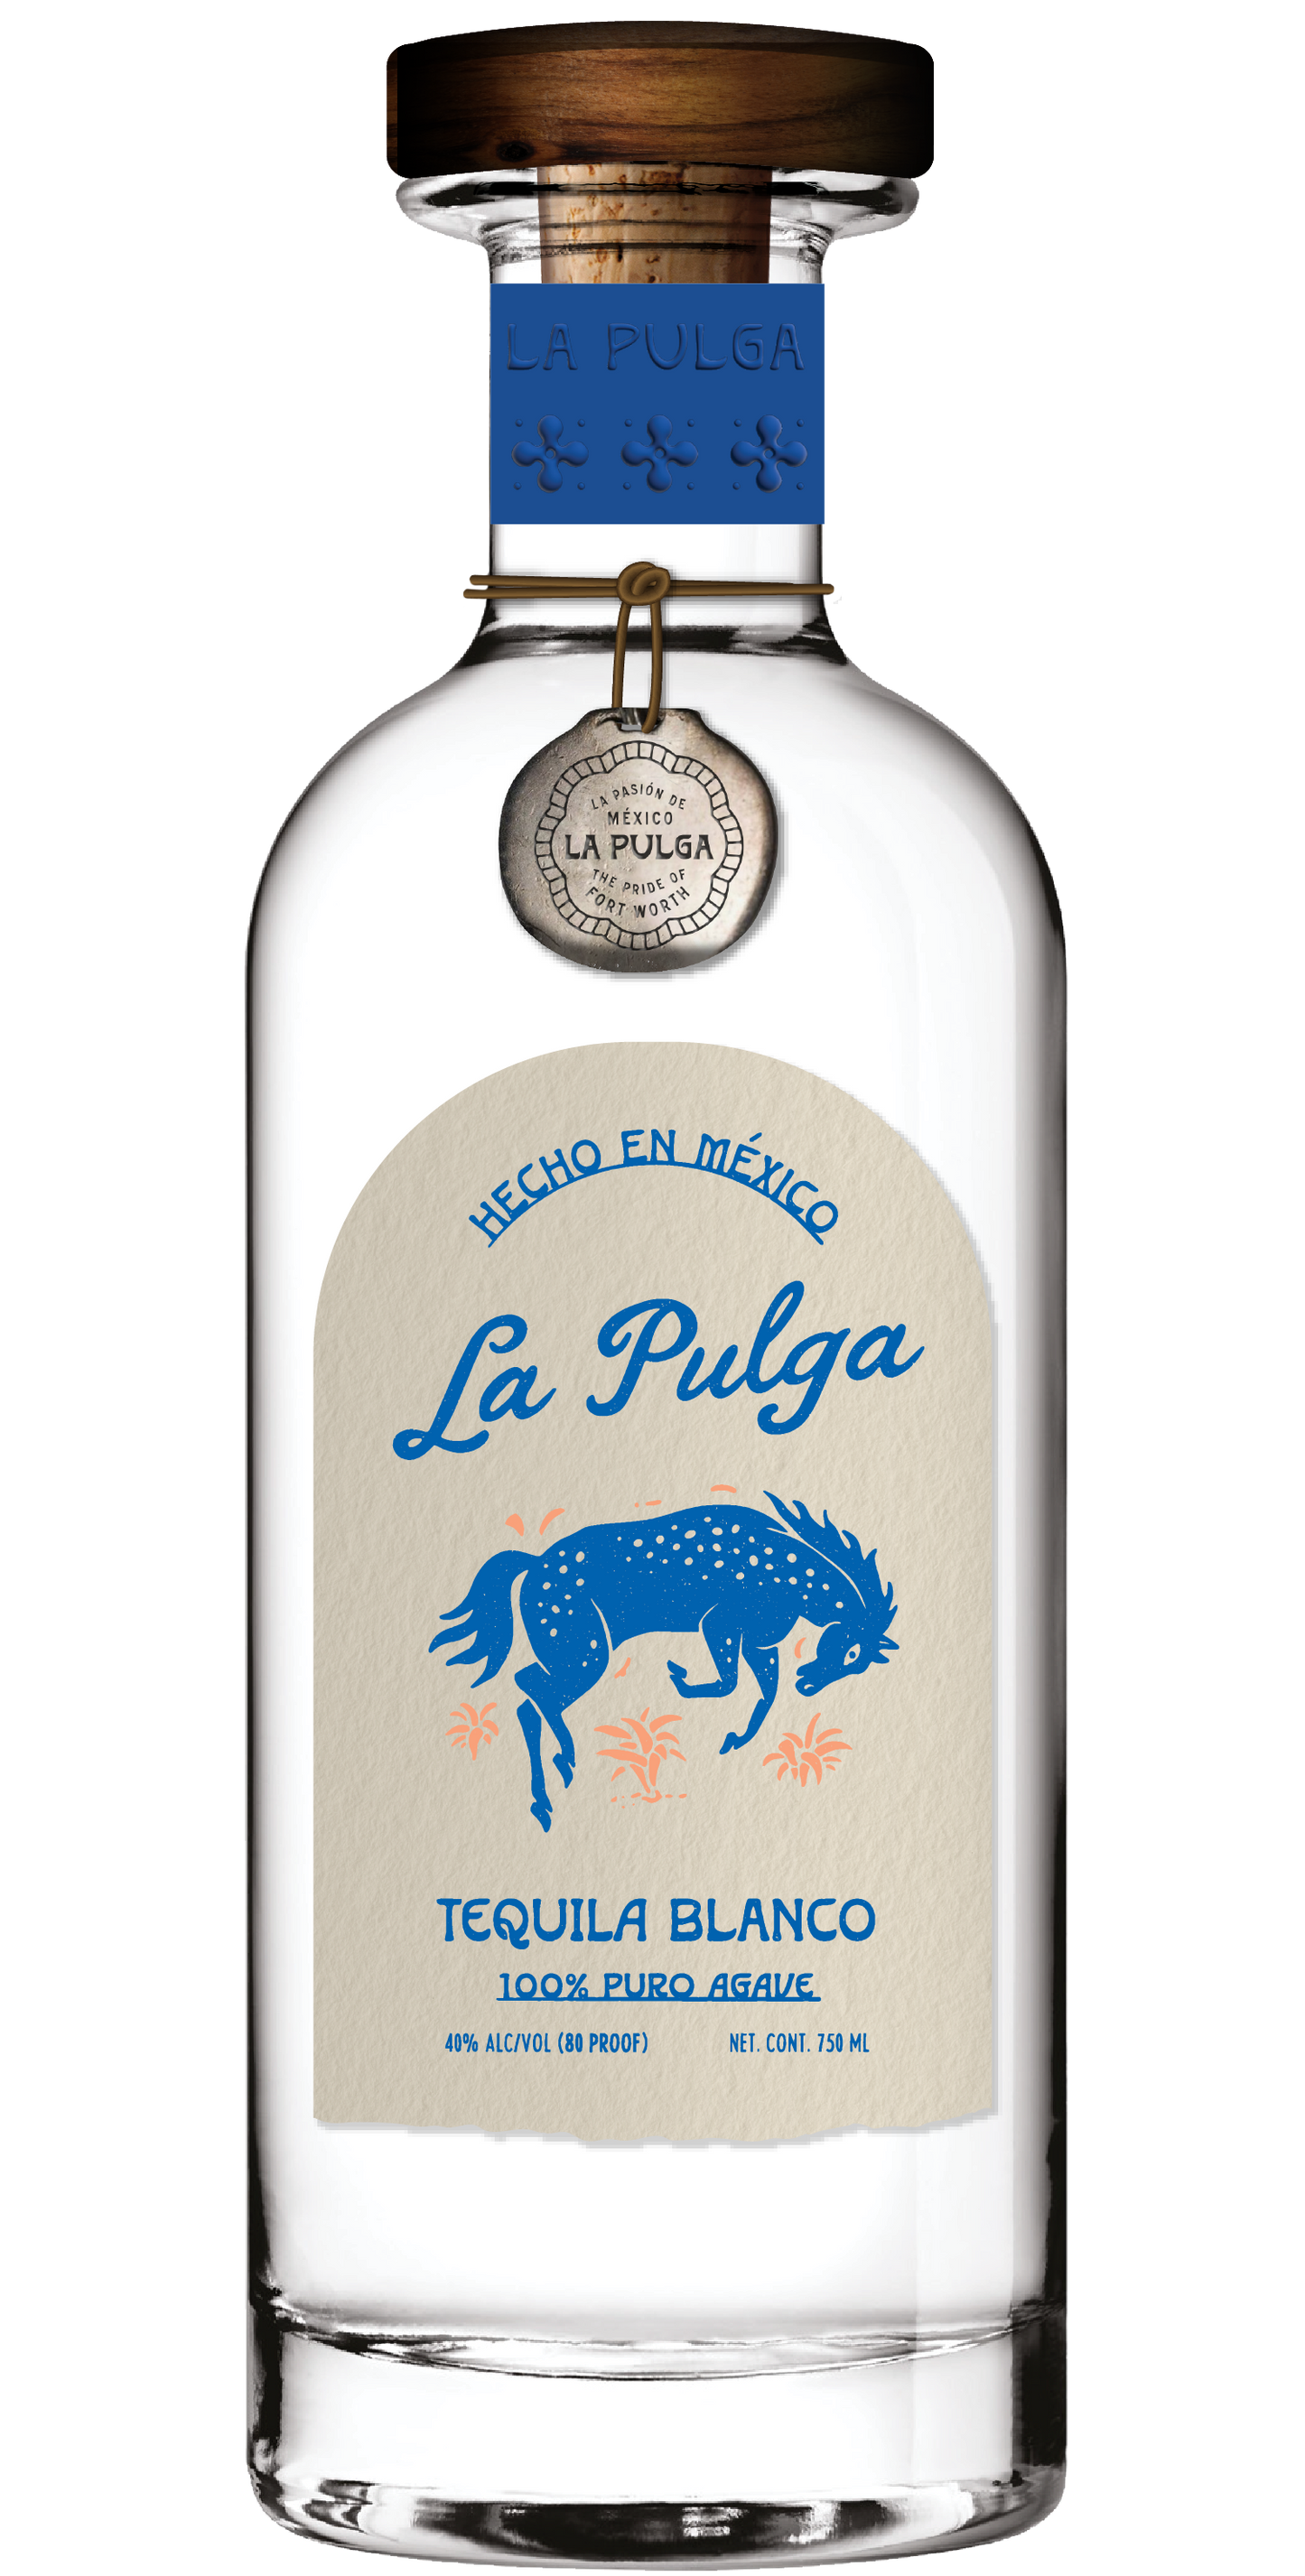 La Pulga Tequila Blanco